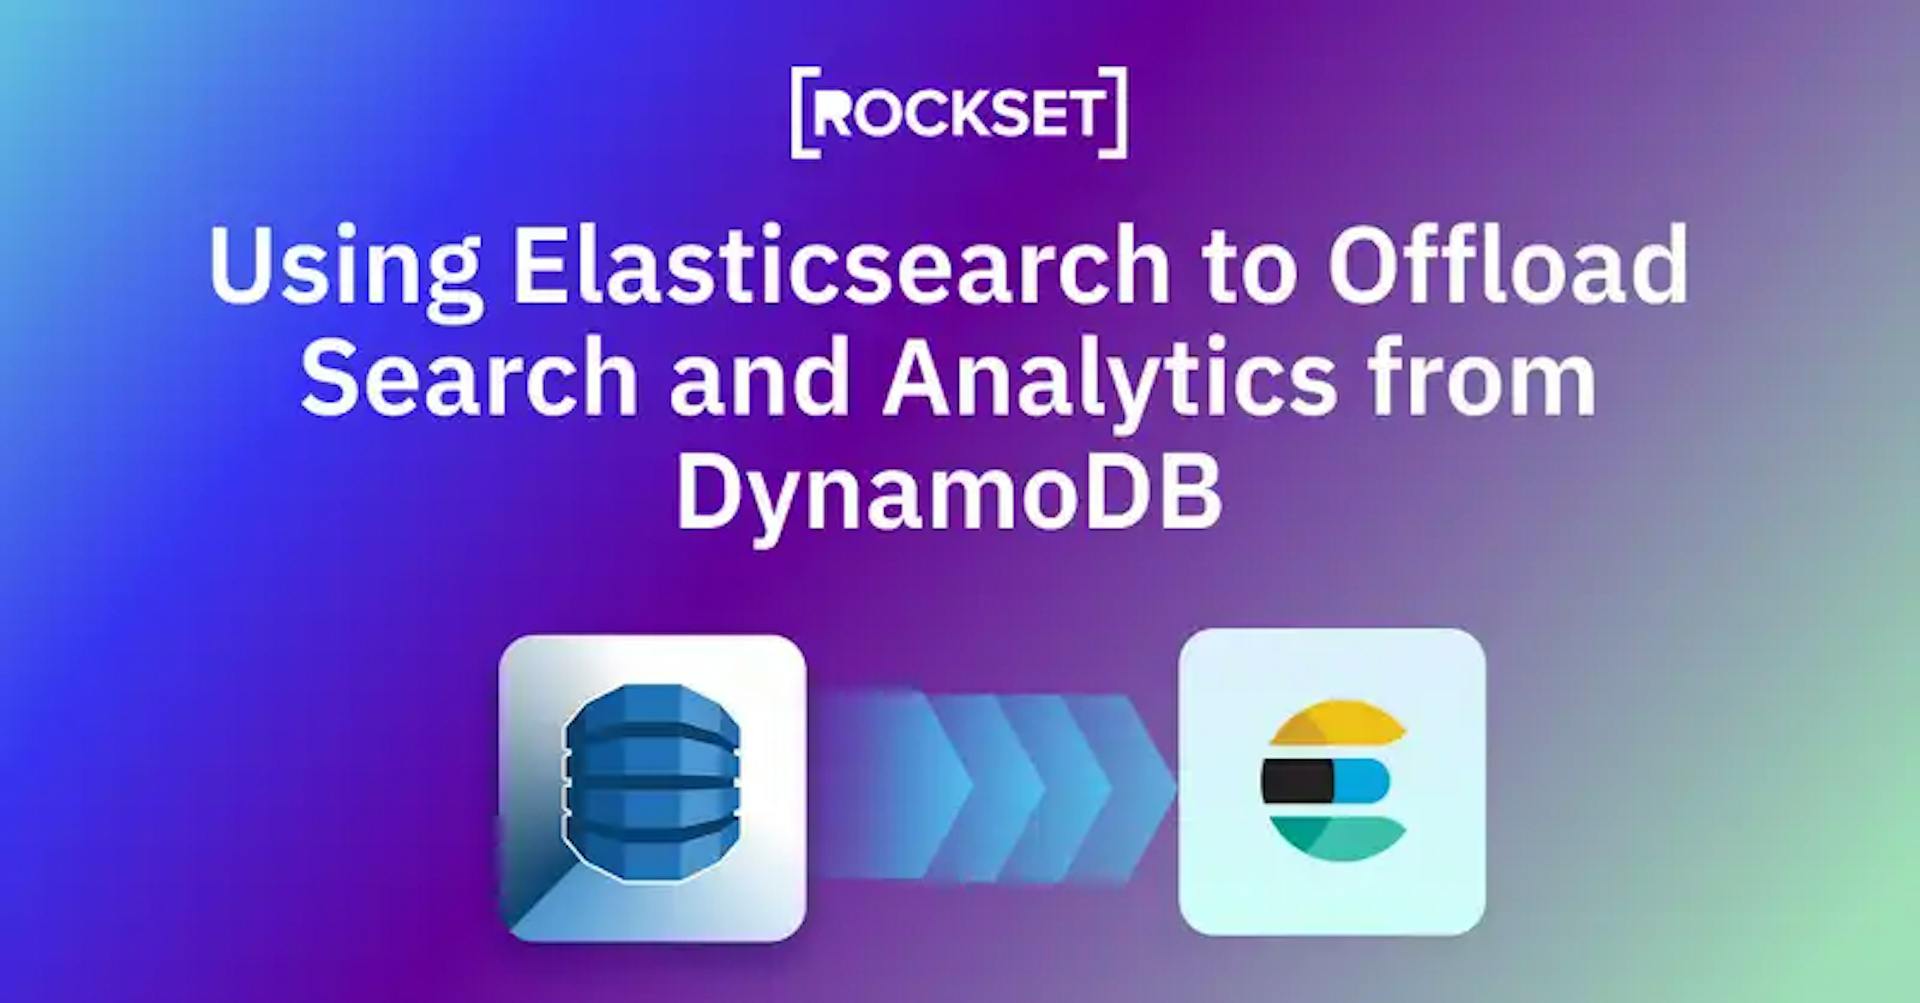 featured image - Usando Elasticsearch para descarregar pesquisas e análises do DynamoDB: prós e contras